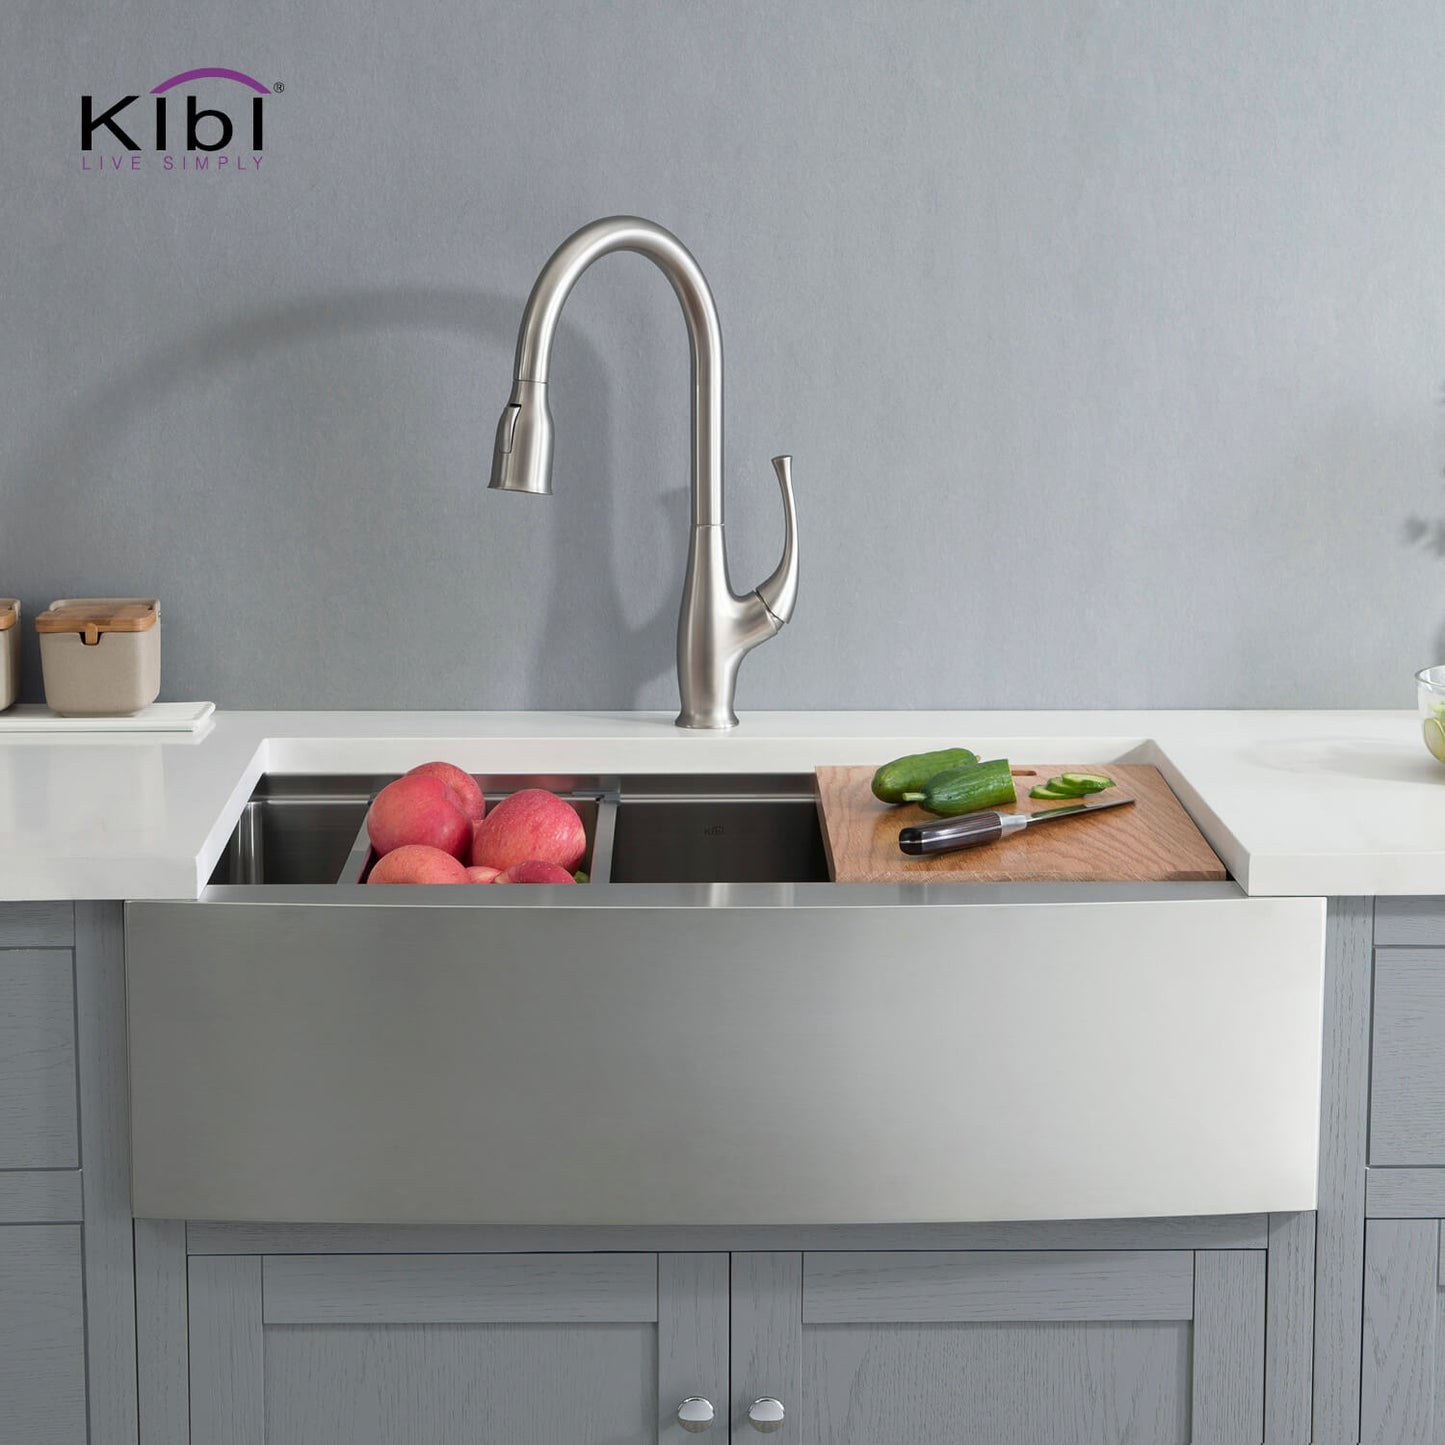 Kibi 33" x 22" x 10" Single Bowl Farmhouse Apron Kitchen Sink With Satin Finish